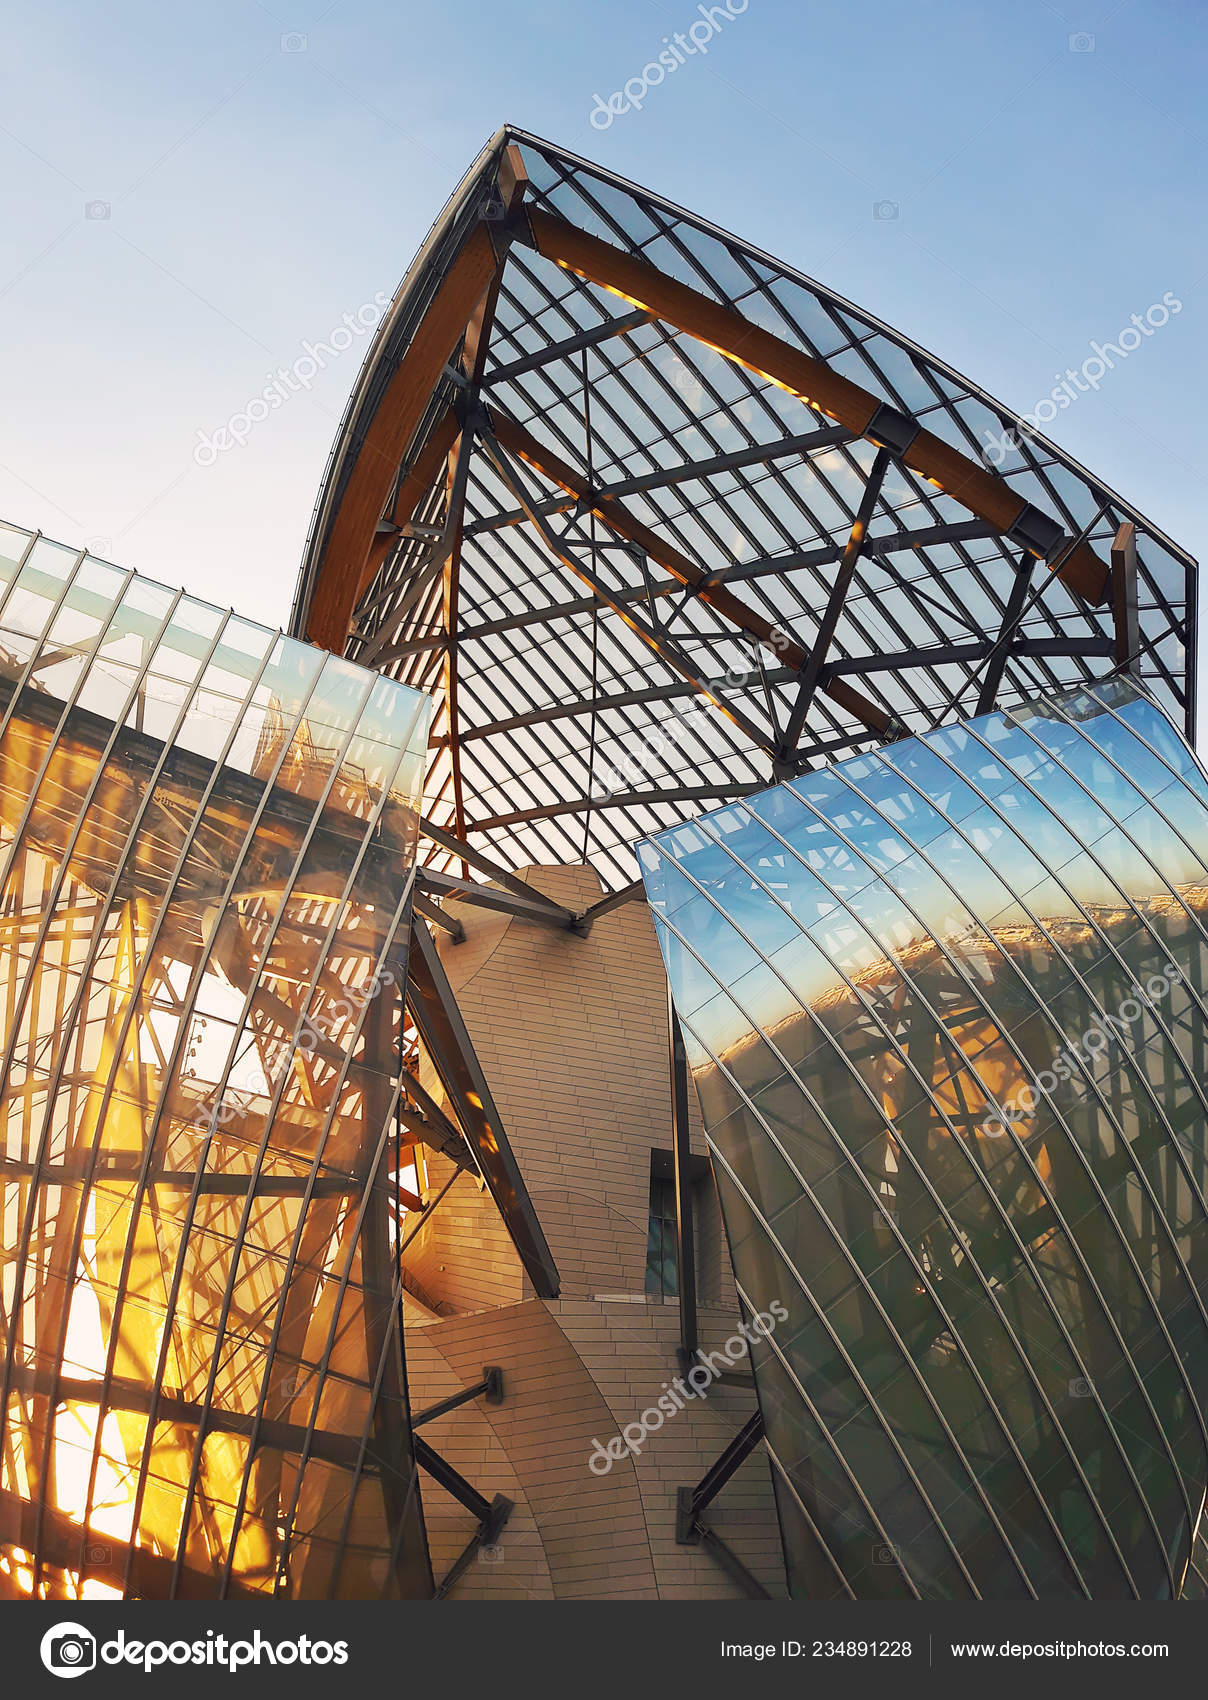 The Louis Vuitton Foundation in Paris, France